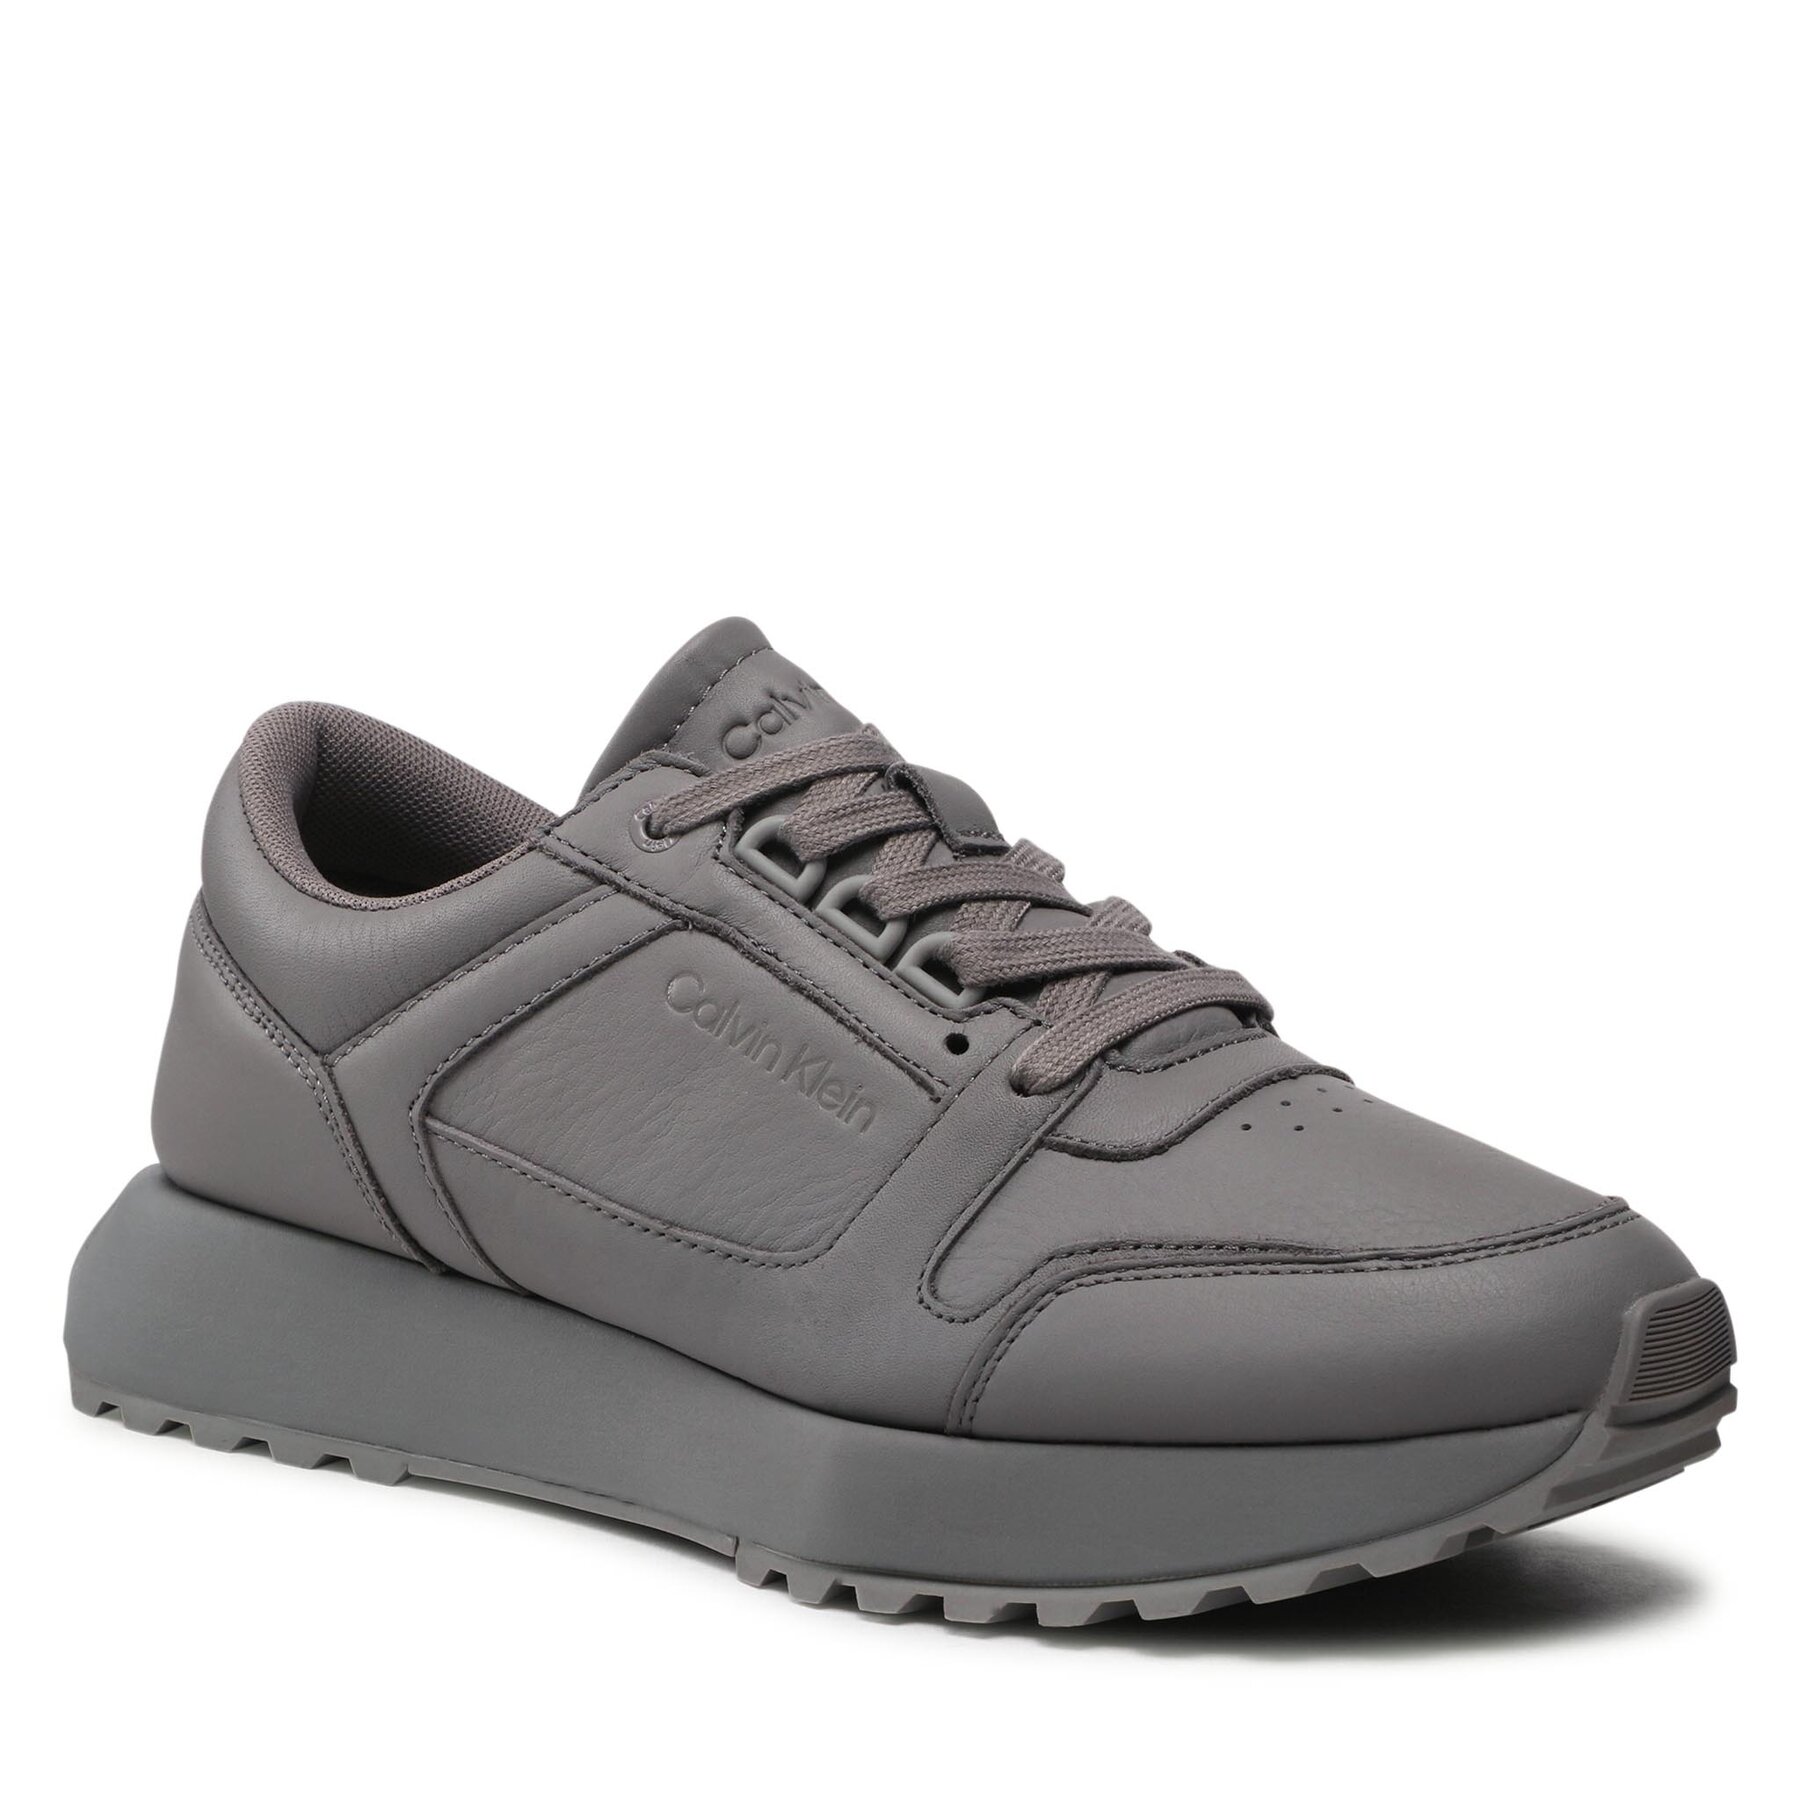 Sneakers Calvin Klein Low Top Lace Up Lth HM0HM00747 Grey Asphalt PQ6 Asphalt imagine super redus 2022